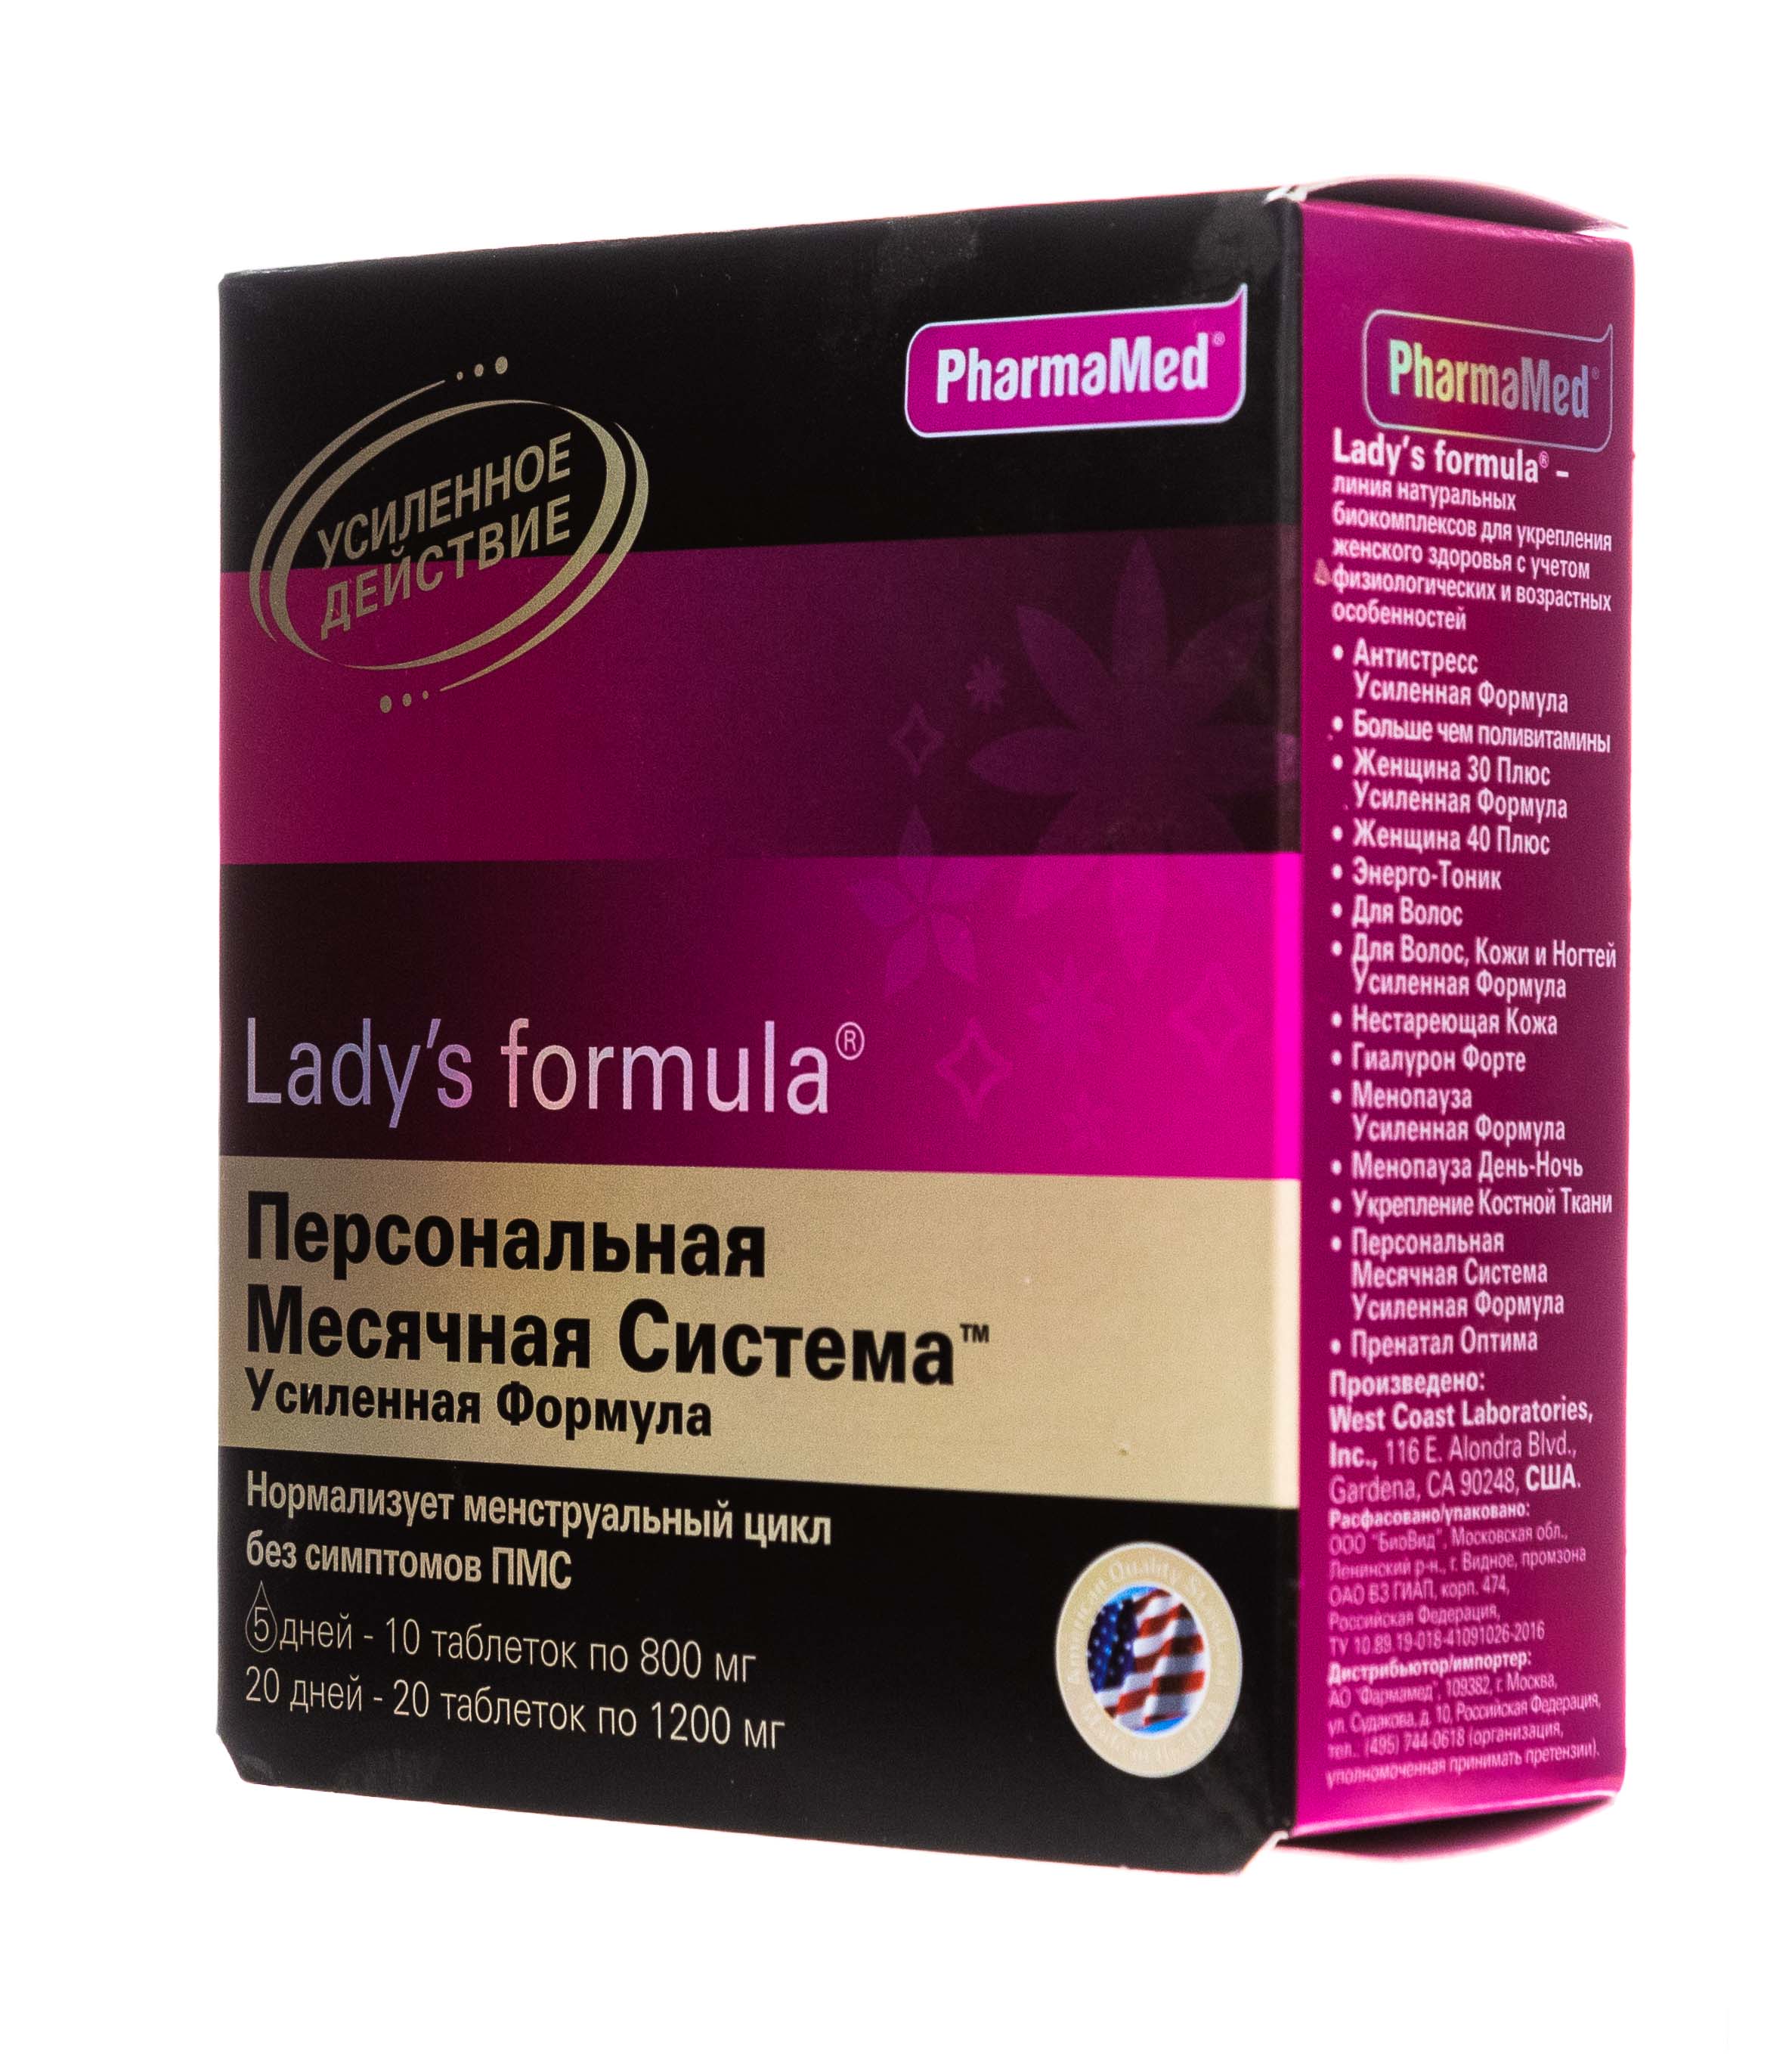 Витамины ледис менопауза. Lady's Formula (ледис формула). Леди формула усилкнная. Ледис формула Персональная месячная система усиленная формула. Ледис формула менопауза усиленная формула.